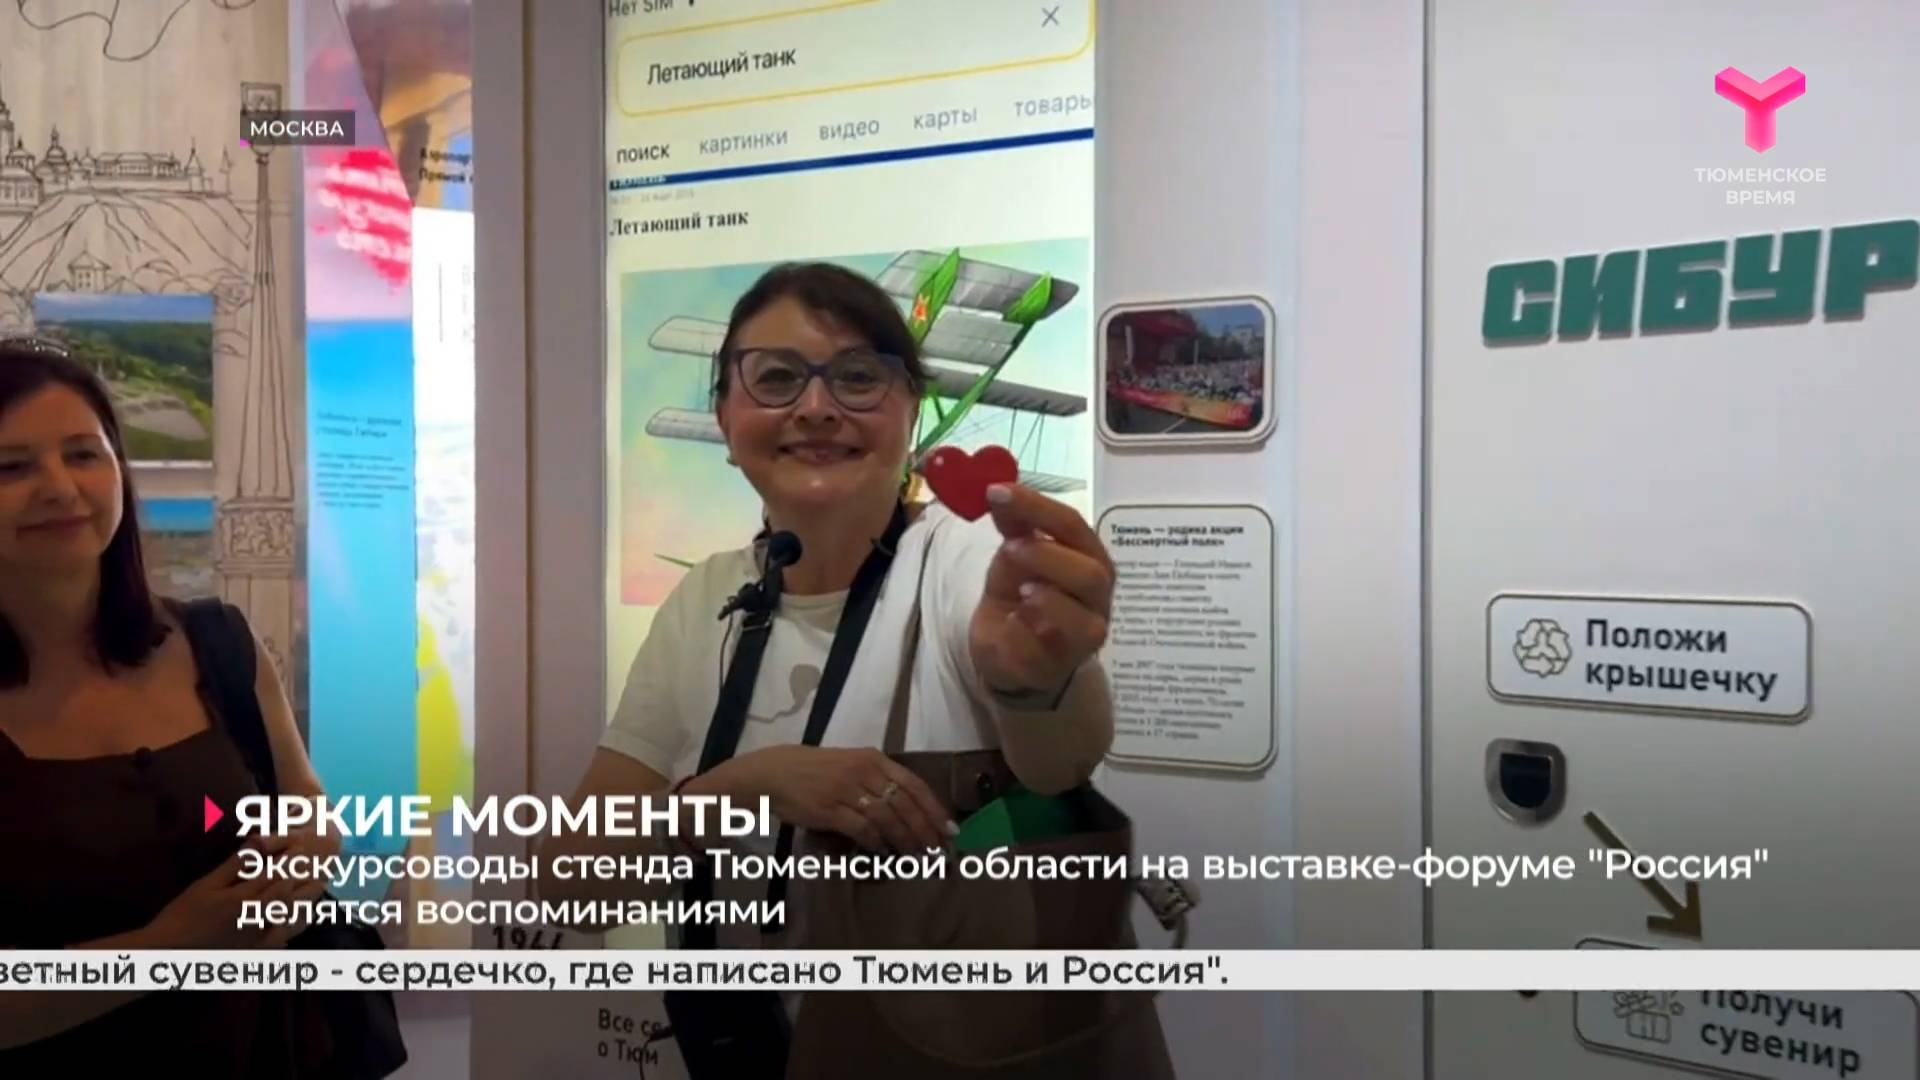 Экскурсоводы стенда Тюменской области на выставке-форуме "Россия" делятся воспоминаниями